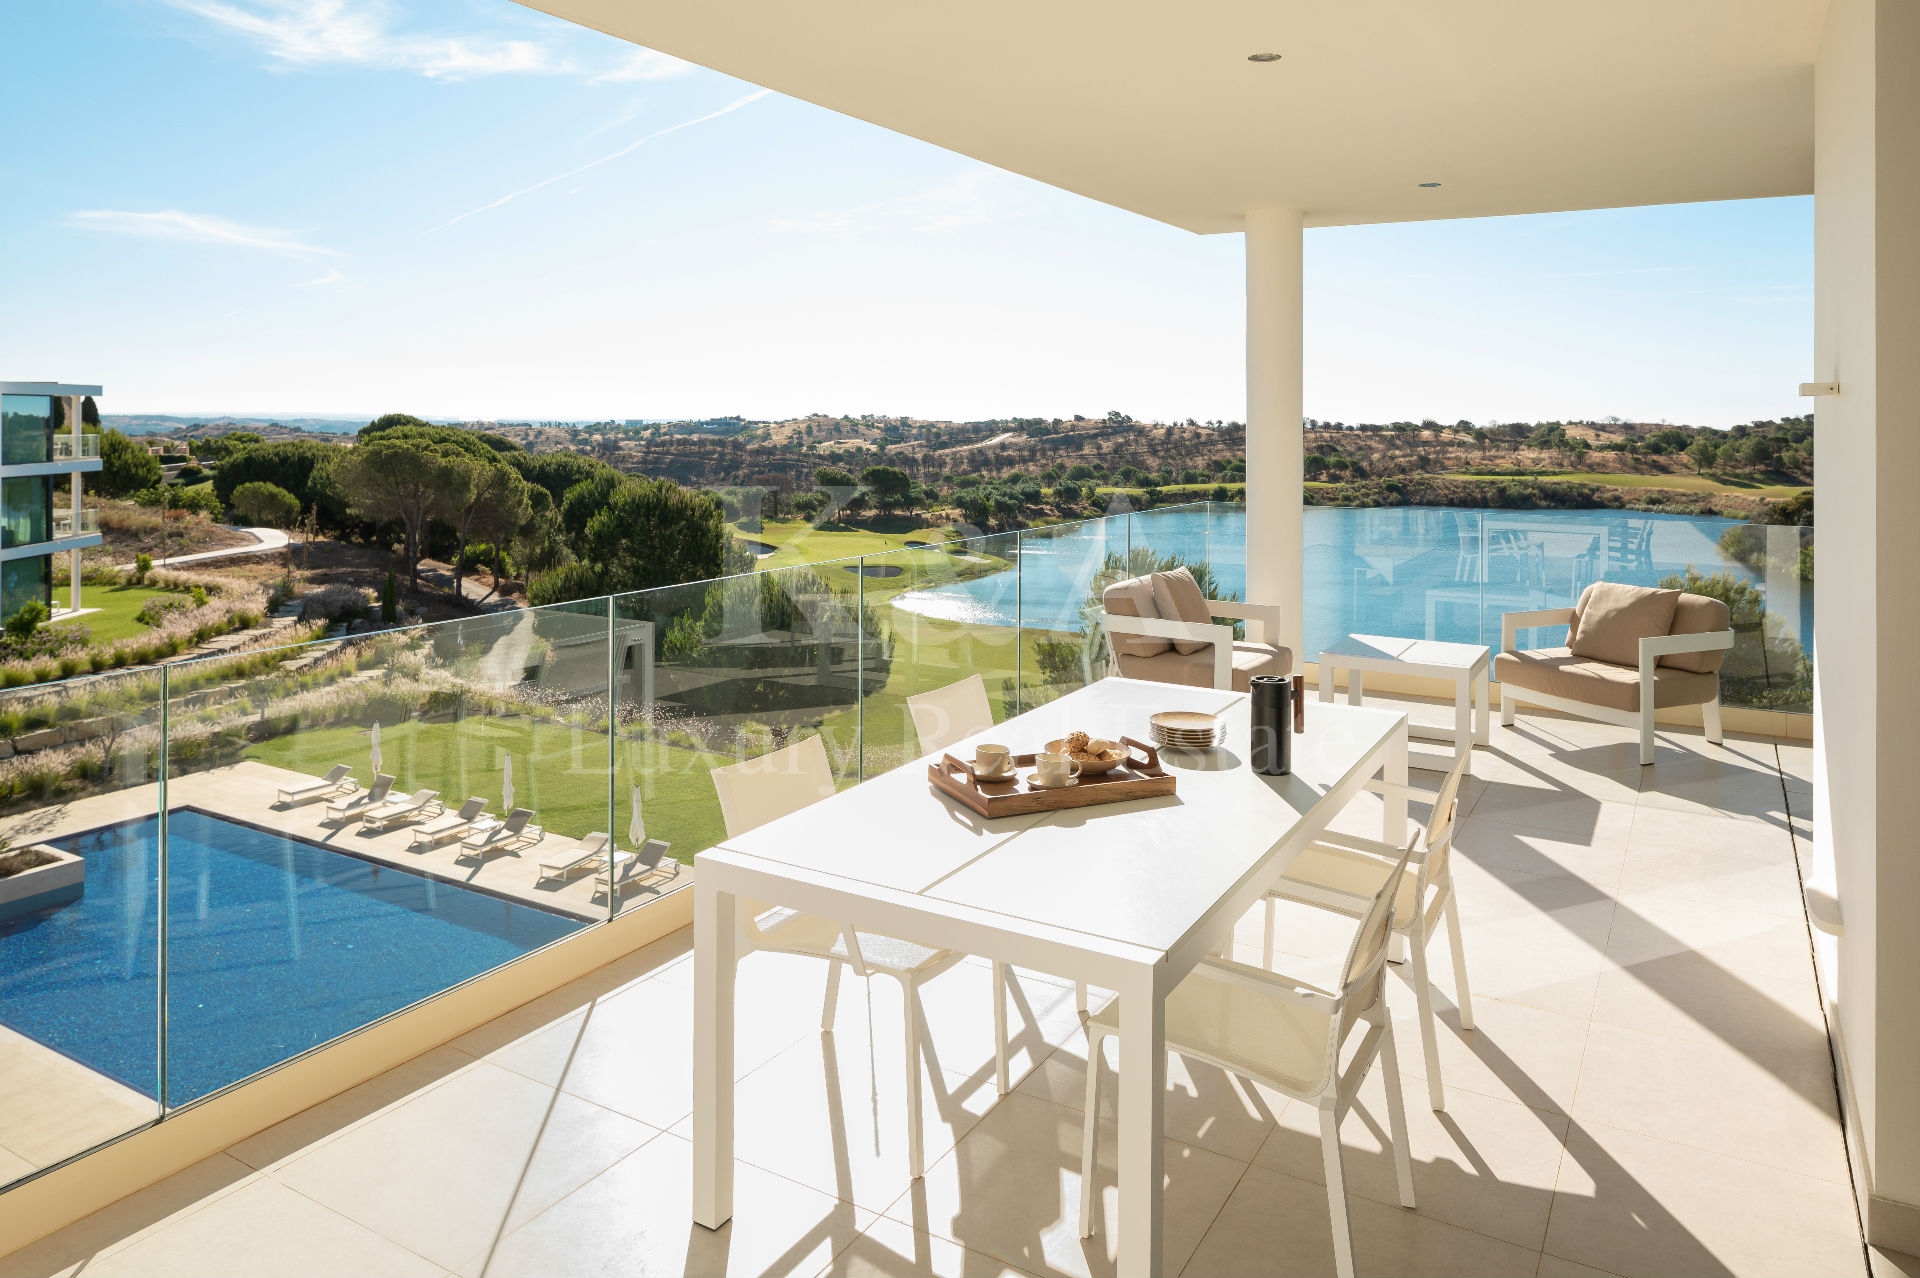 2 Bedroom apartment in an exclusive golf resort, Algarve